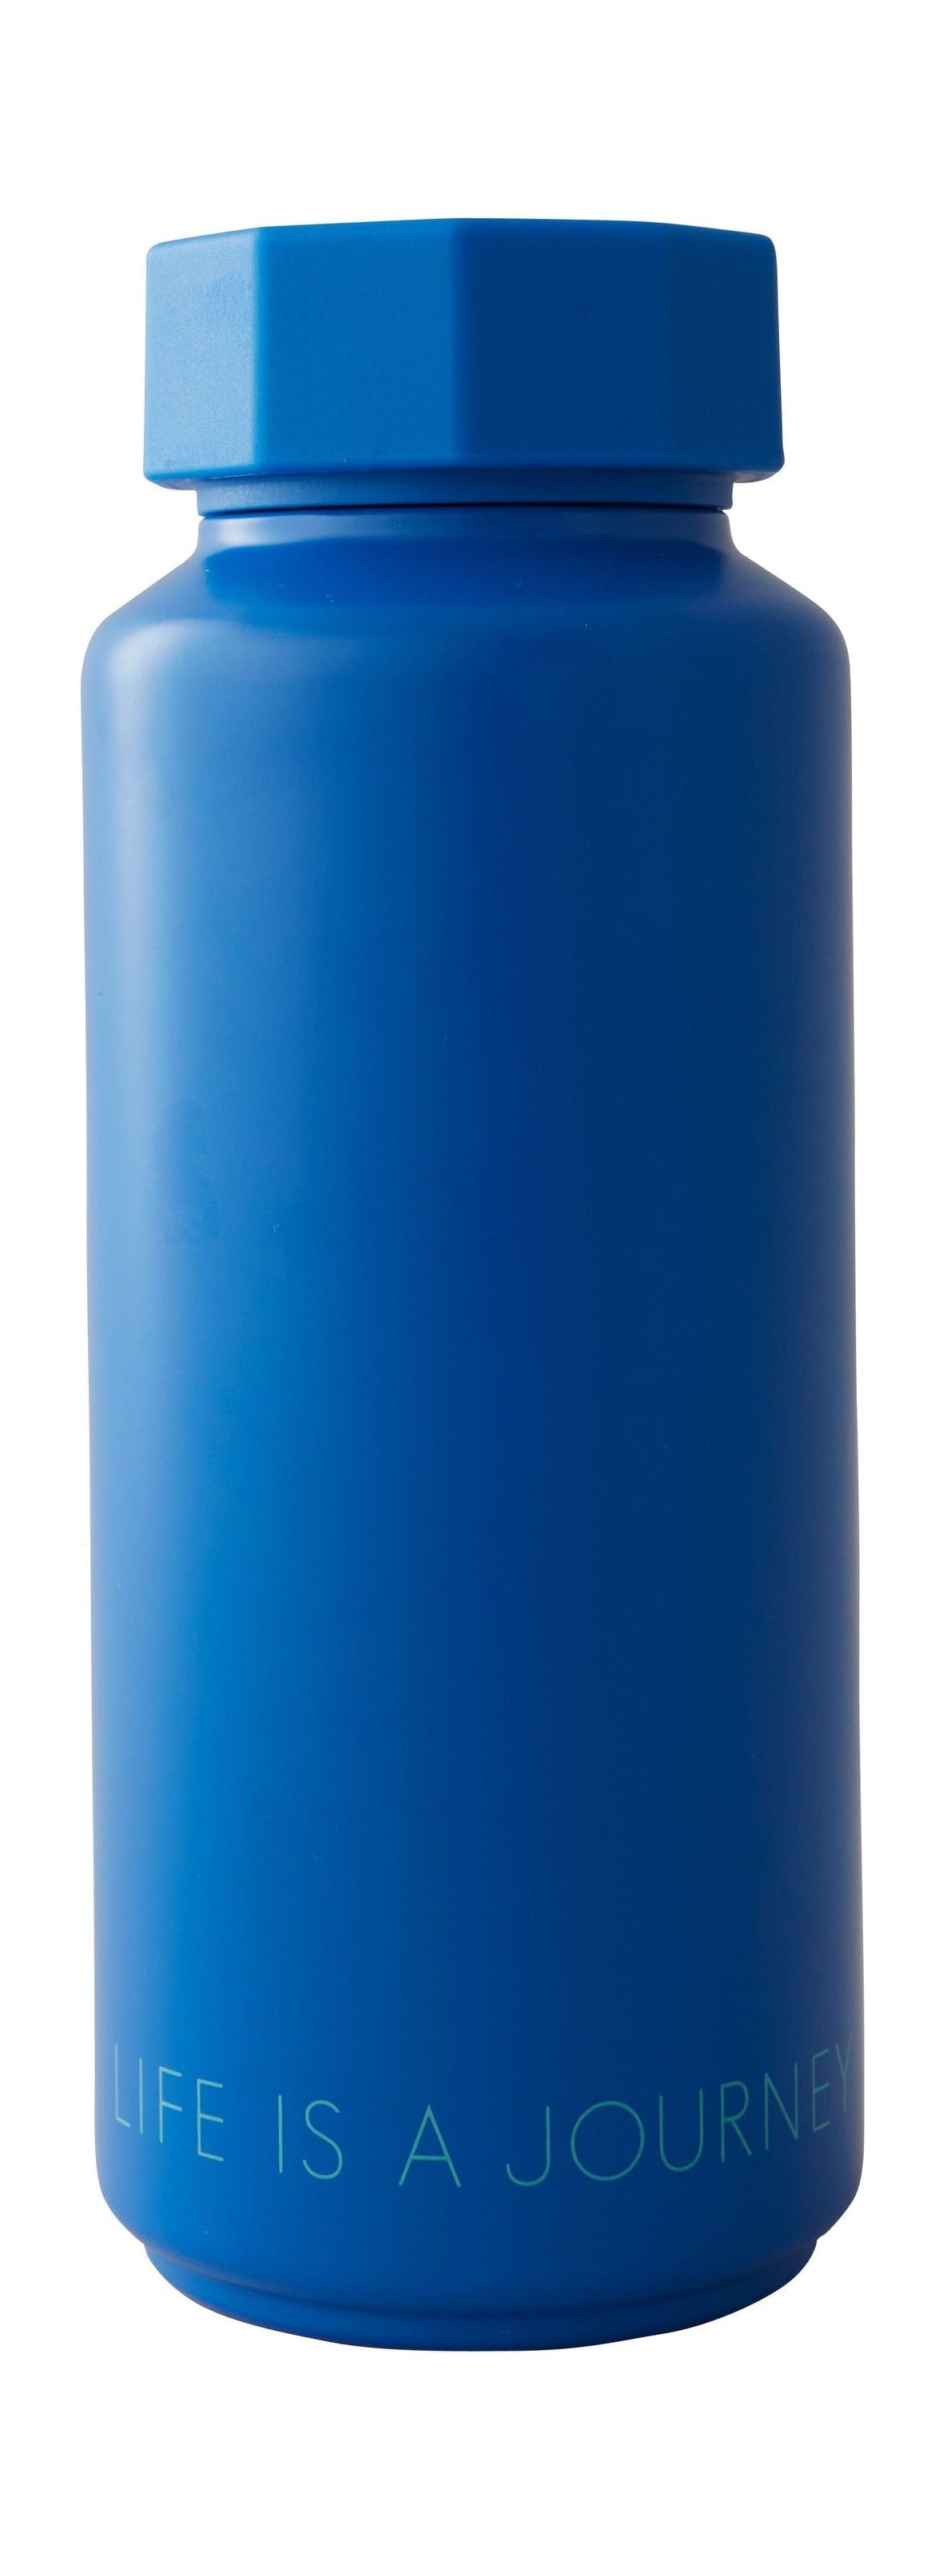 Diseño de letras tono en tono termo botella, azul cobalto